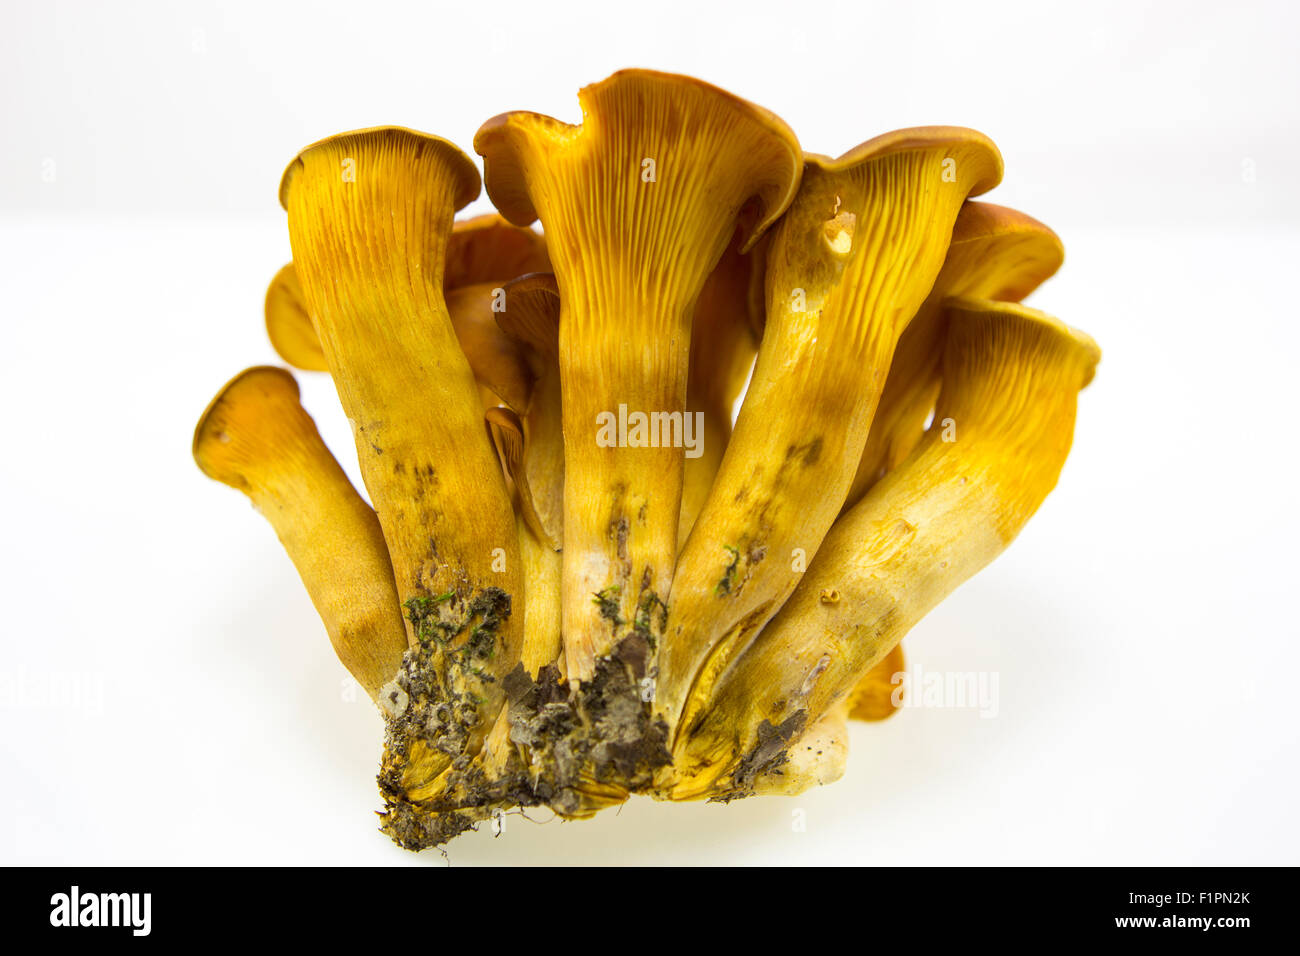 Omphalotus Olearius, spécimens de champignons non comestibles dans les forêts de feuillus Banque D'Images